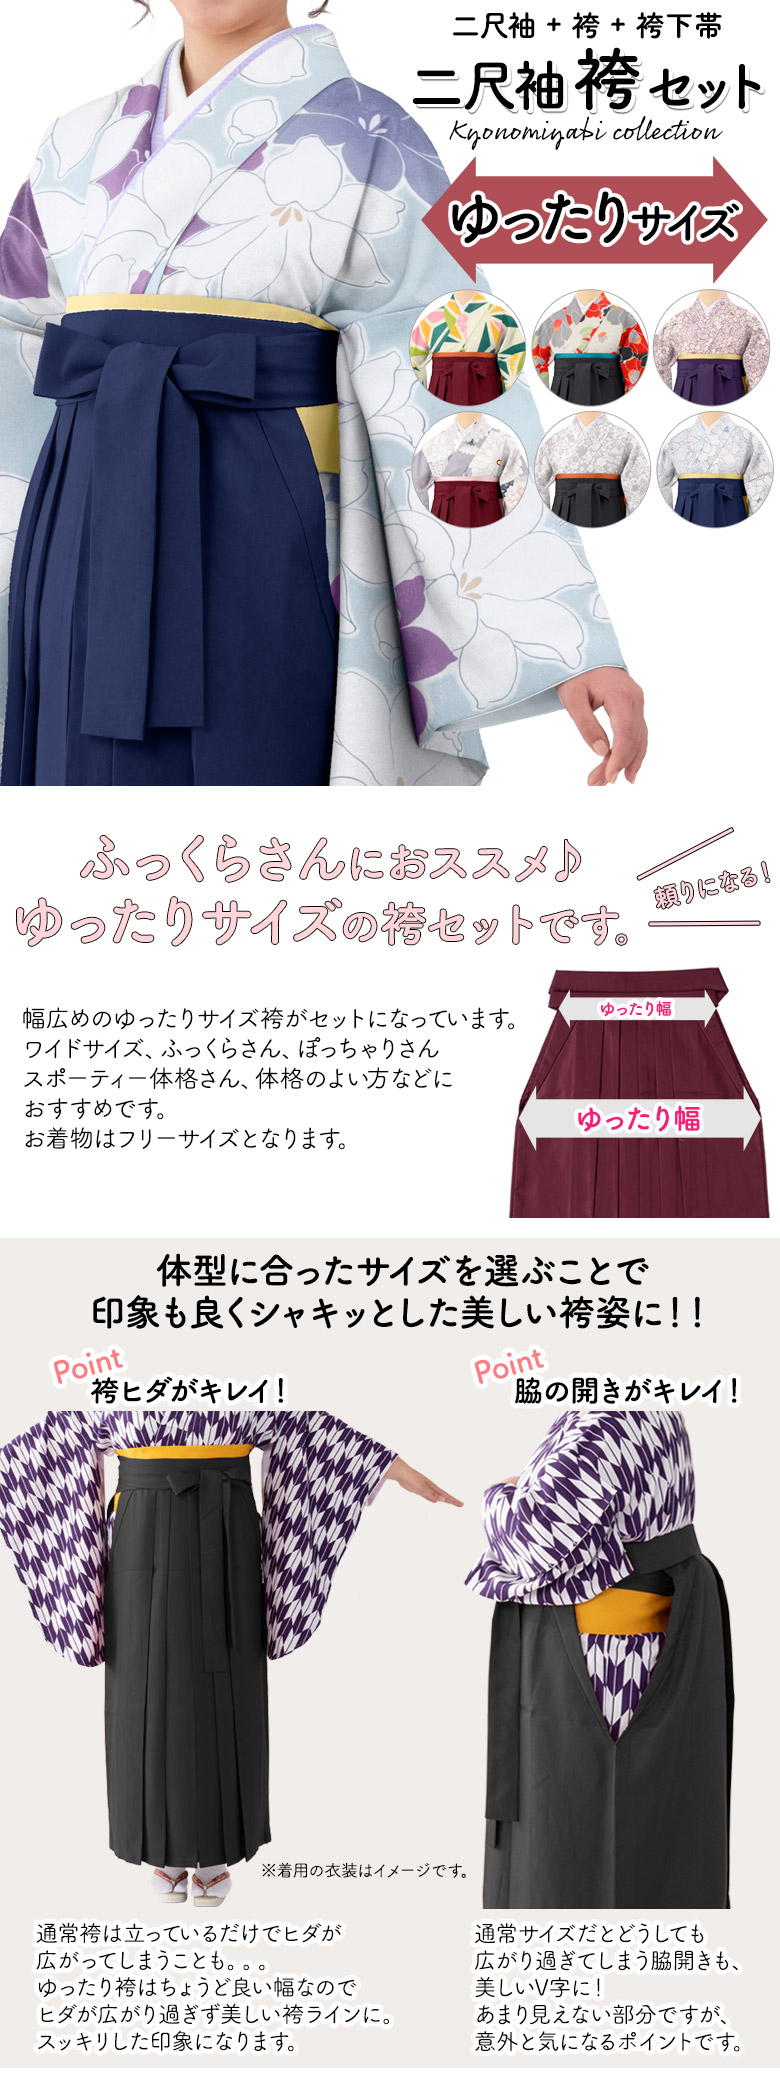 袴セット パープル系小紋×ピーコックブルーの袴